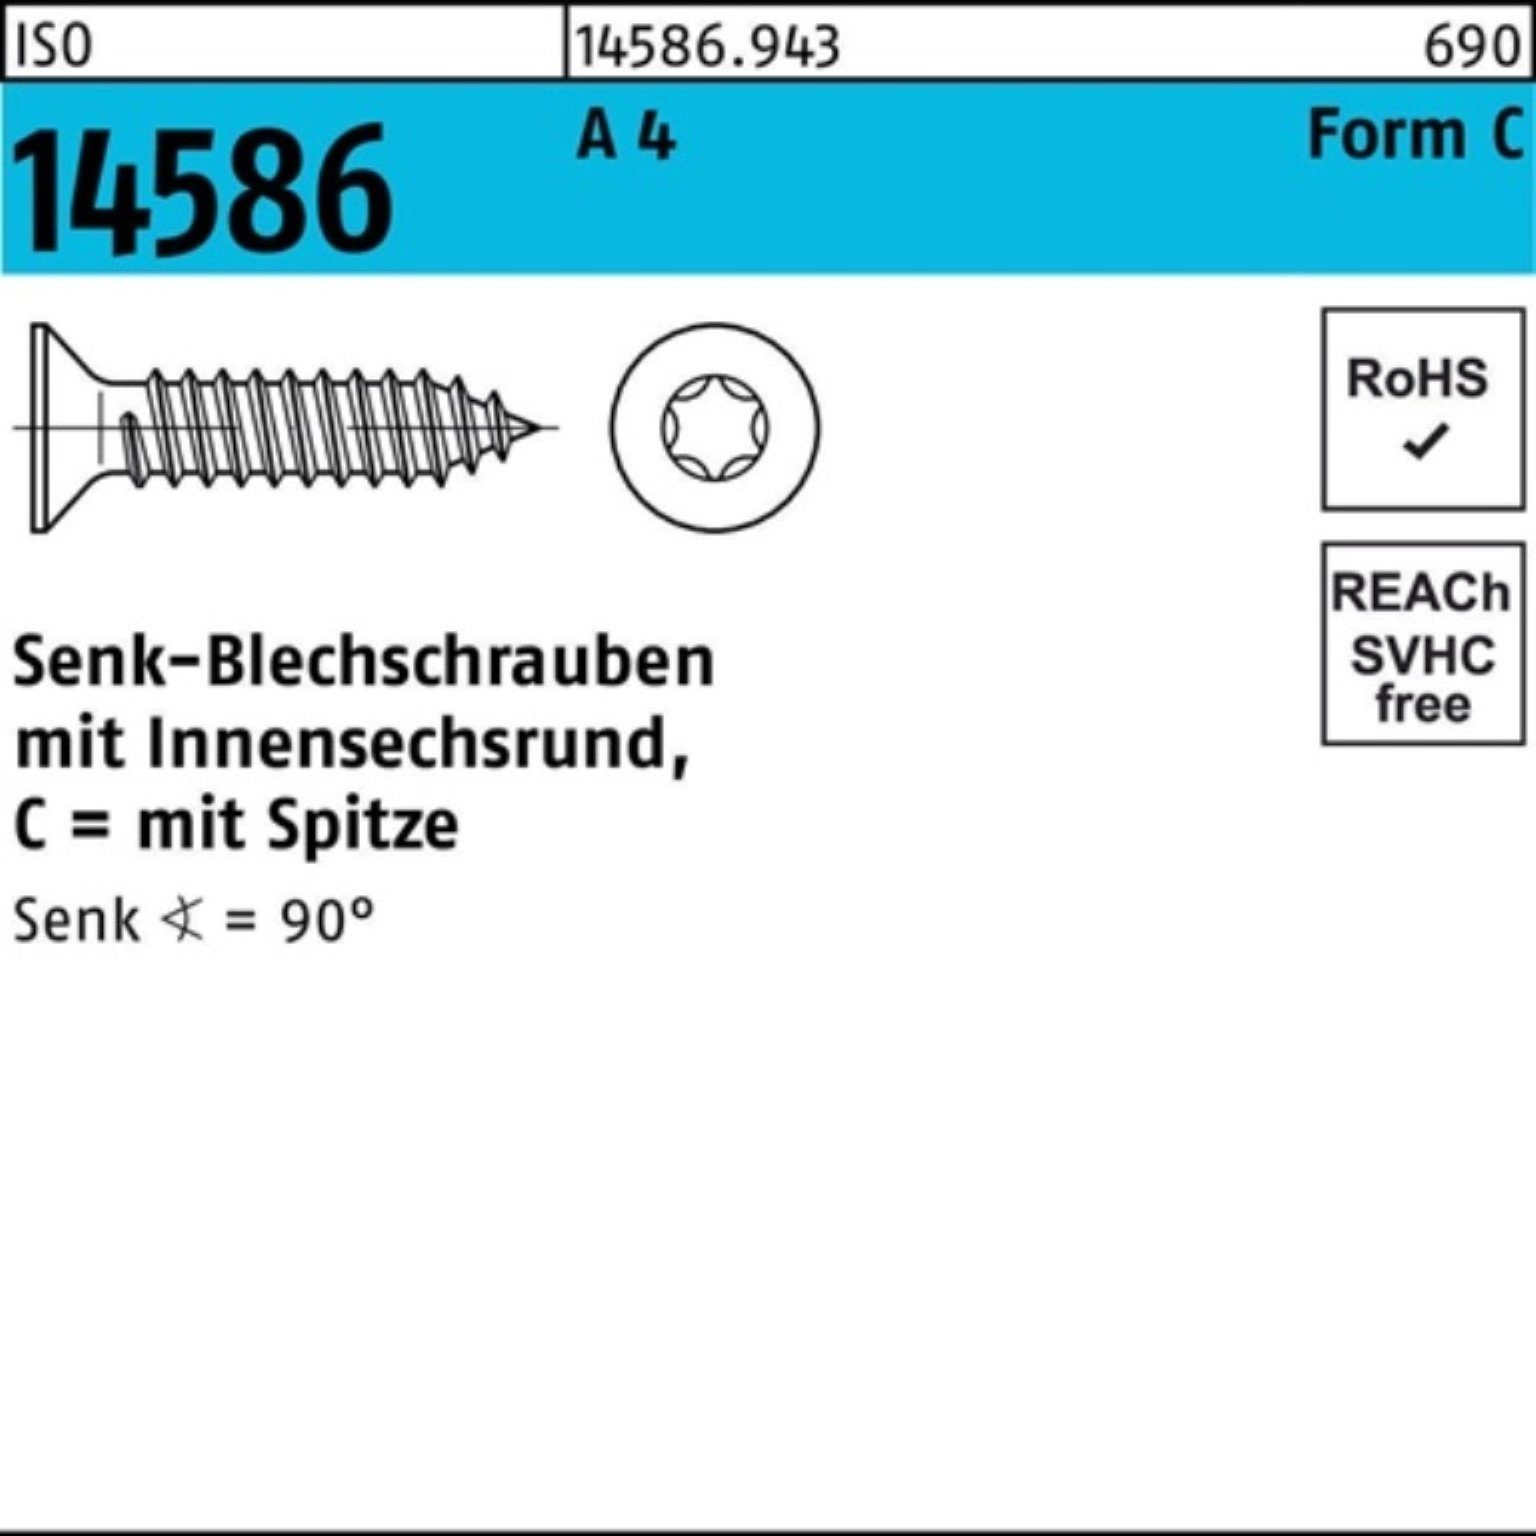 A Pack Schraube ISO 4 ISR/Spitze 32-T15 14586 Senkblechschraube Reyher 500 3,9x 500er